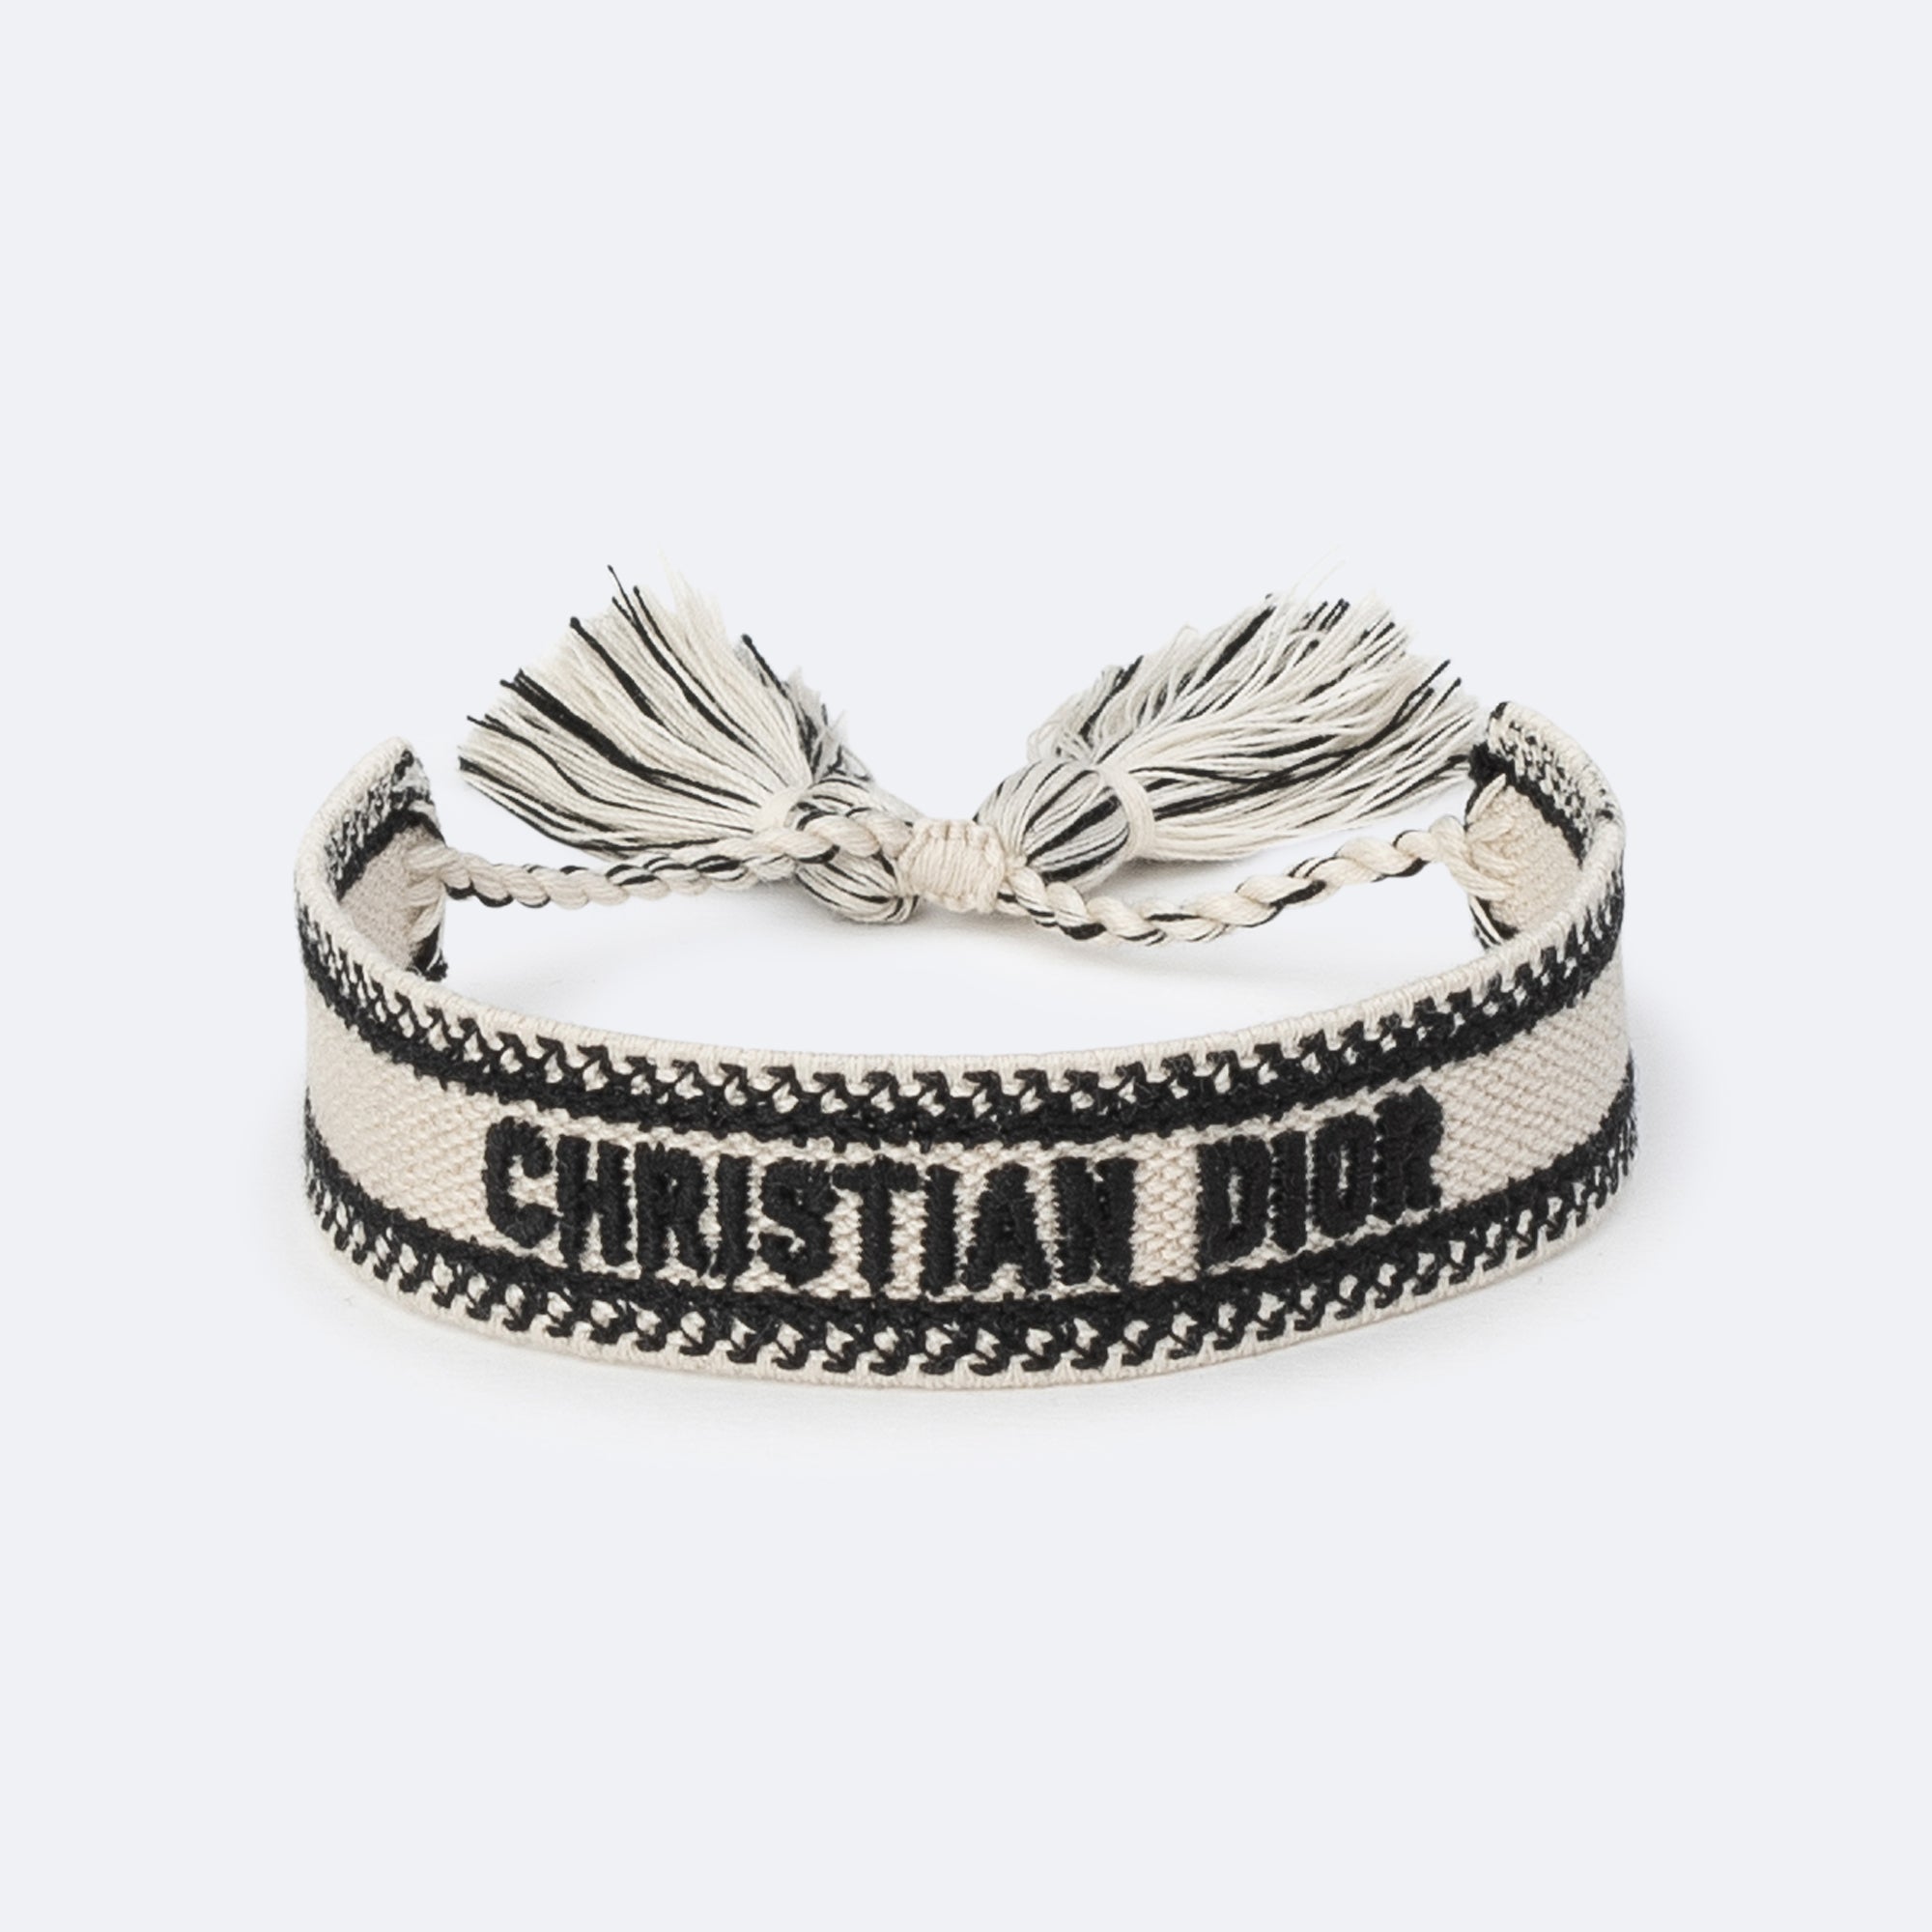 Christian Dior Bracelet Set